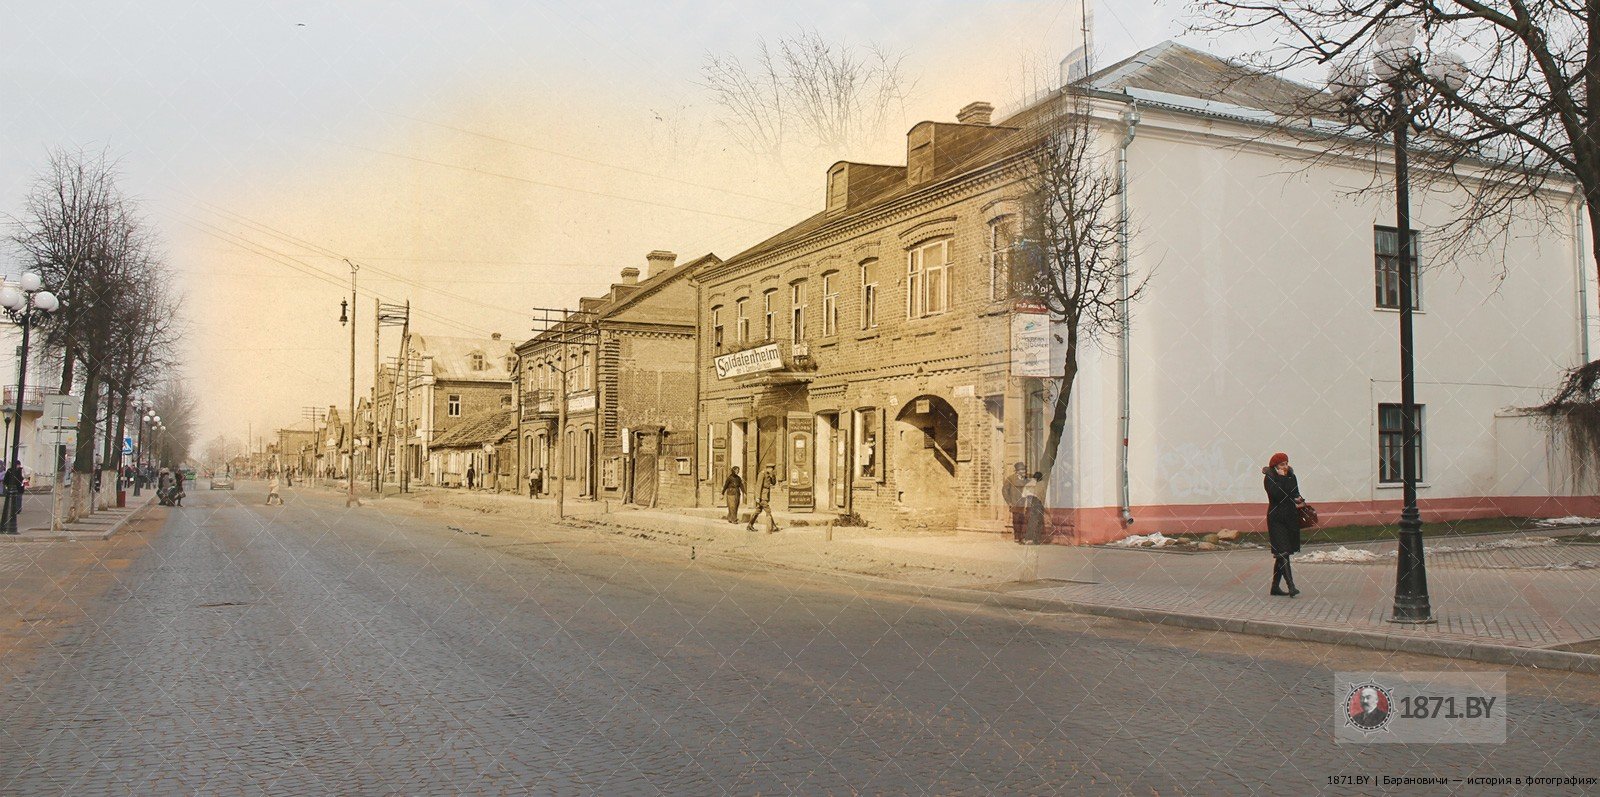 Hauptstrasse_Soveckaya_Baranowitschi_1871by